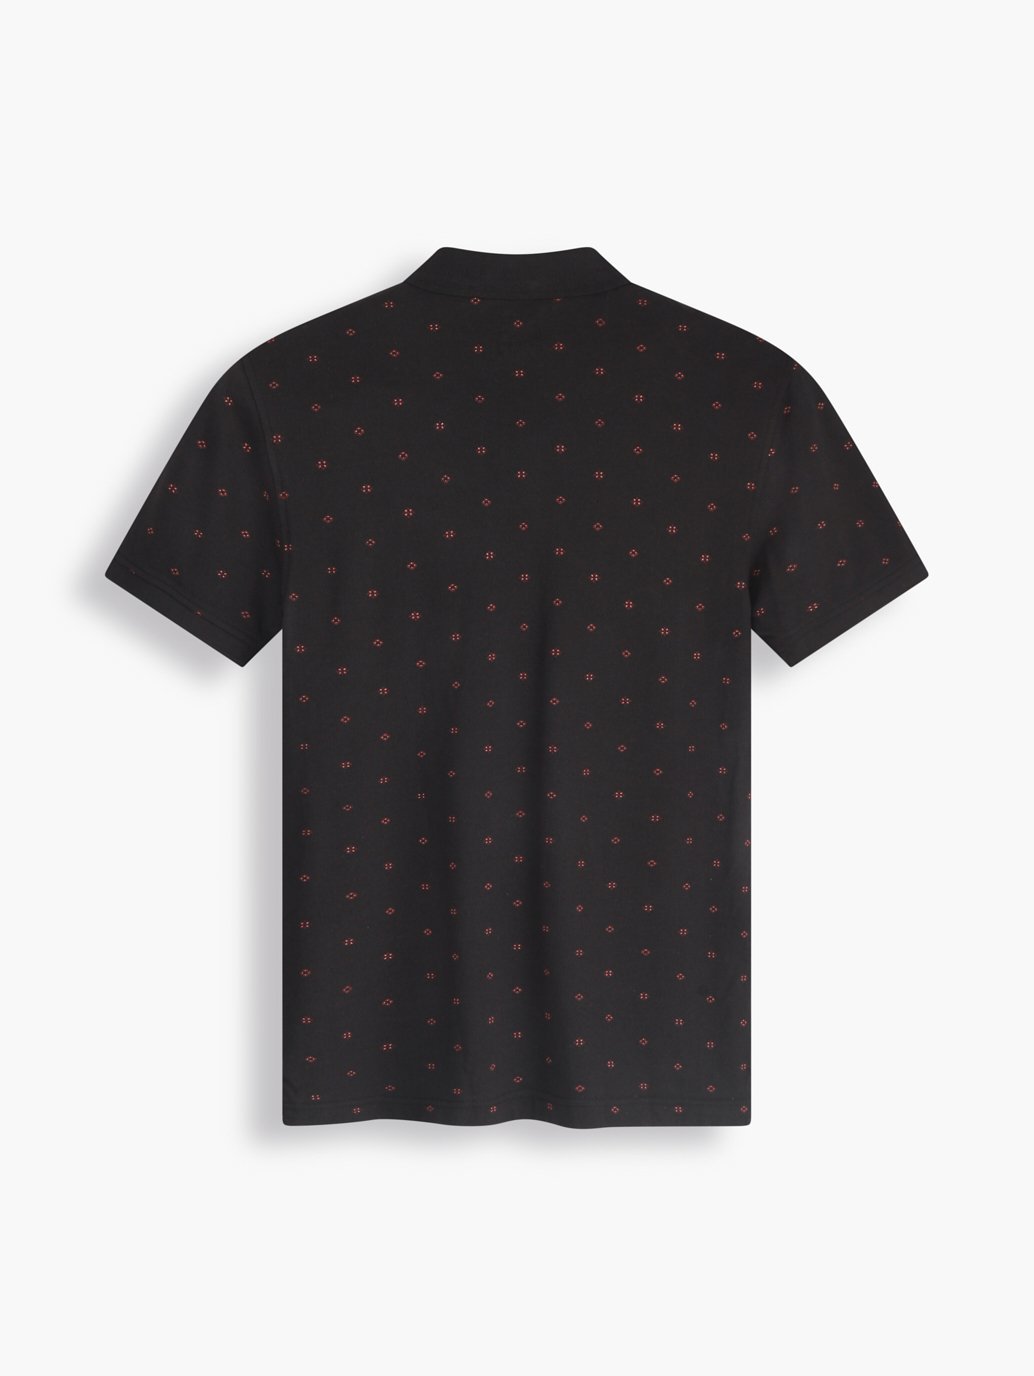 Buy Levi's® Men's Housemark Polo Shirt| Levi's Official Online Store SG